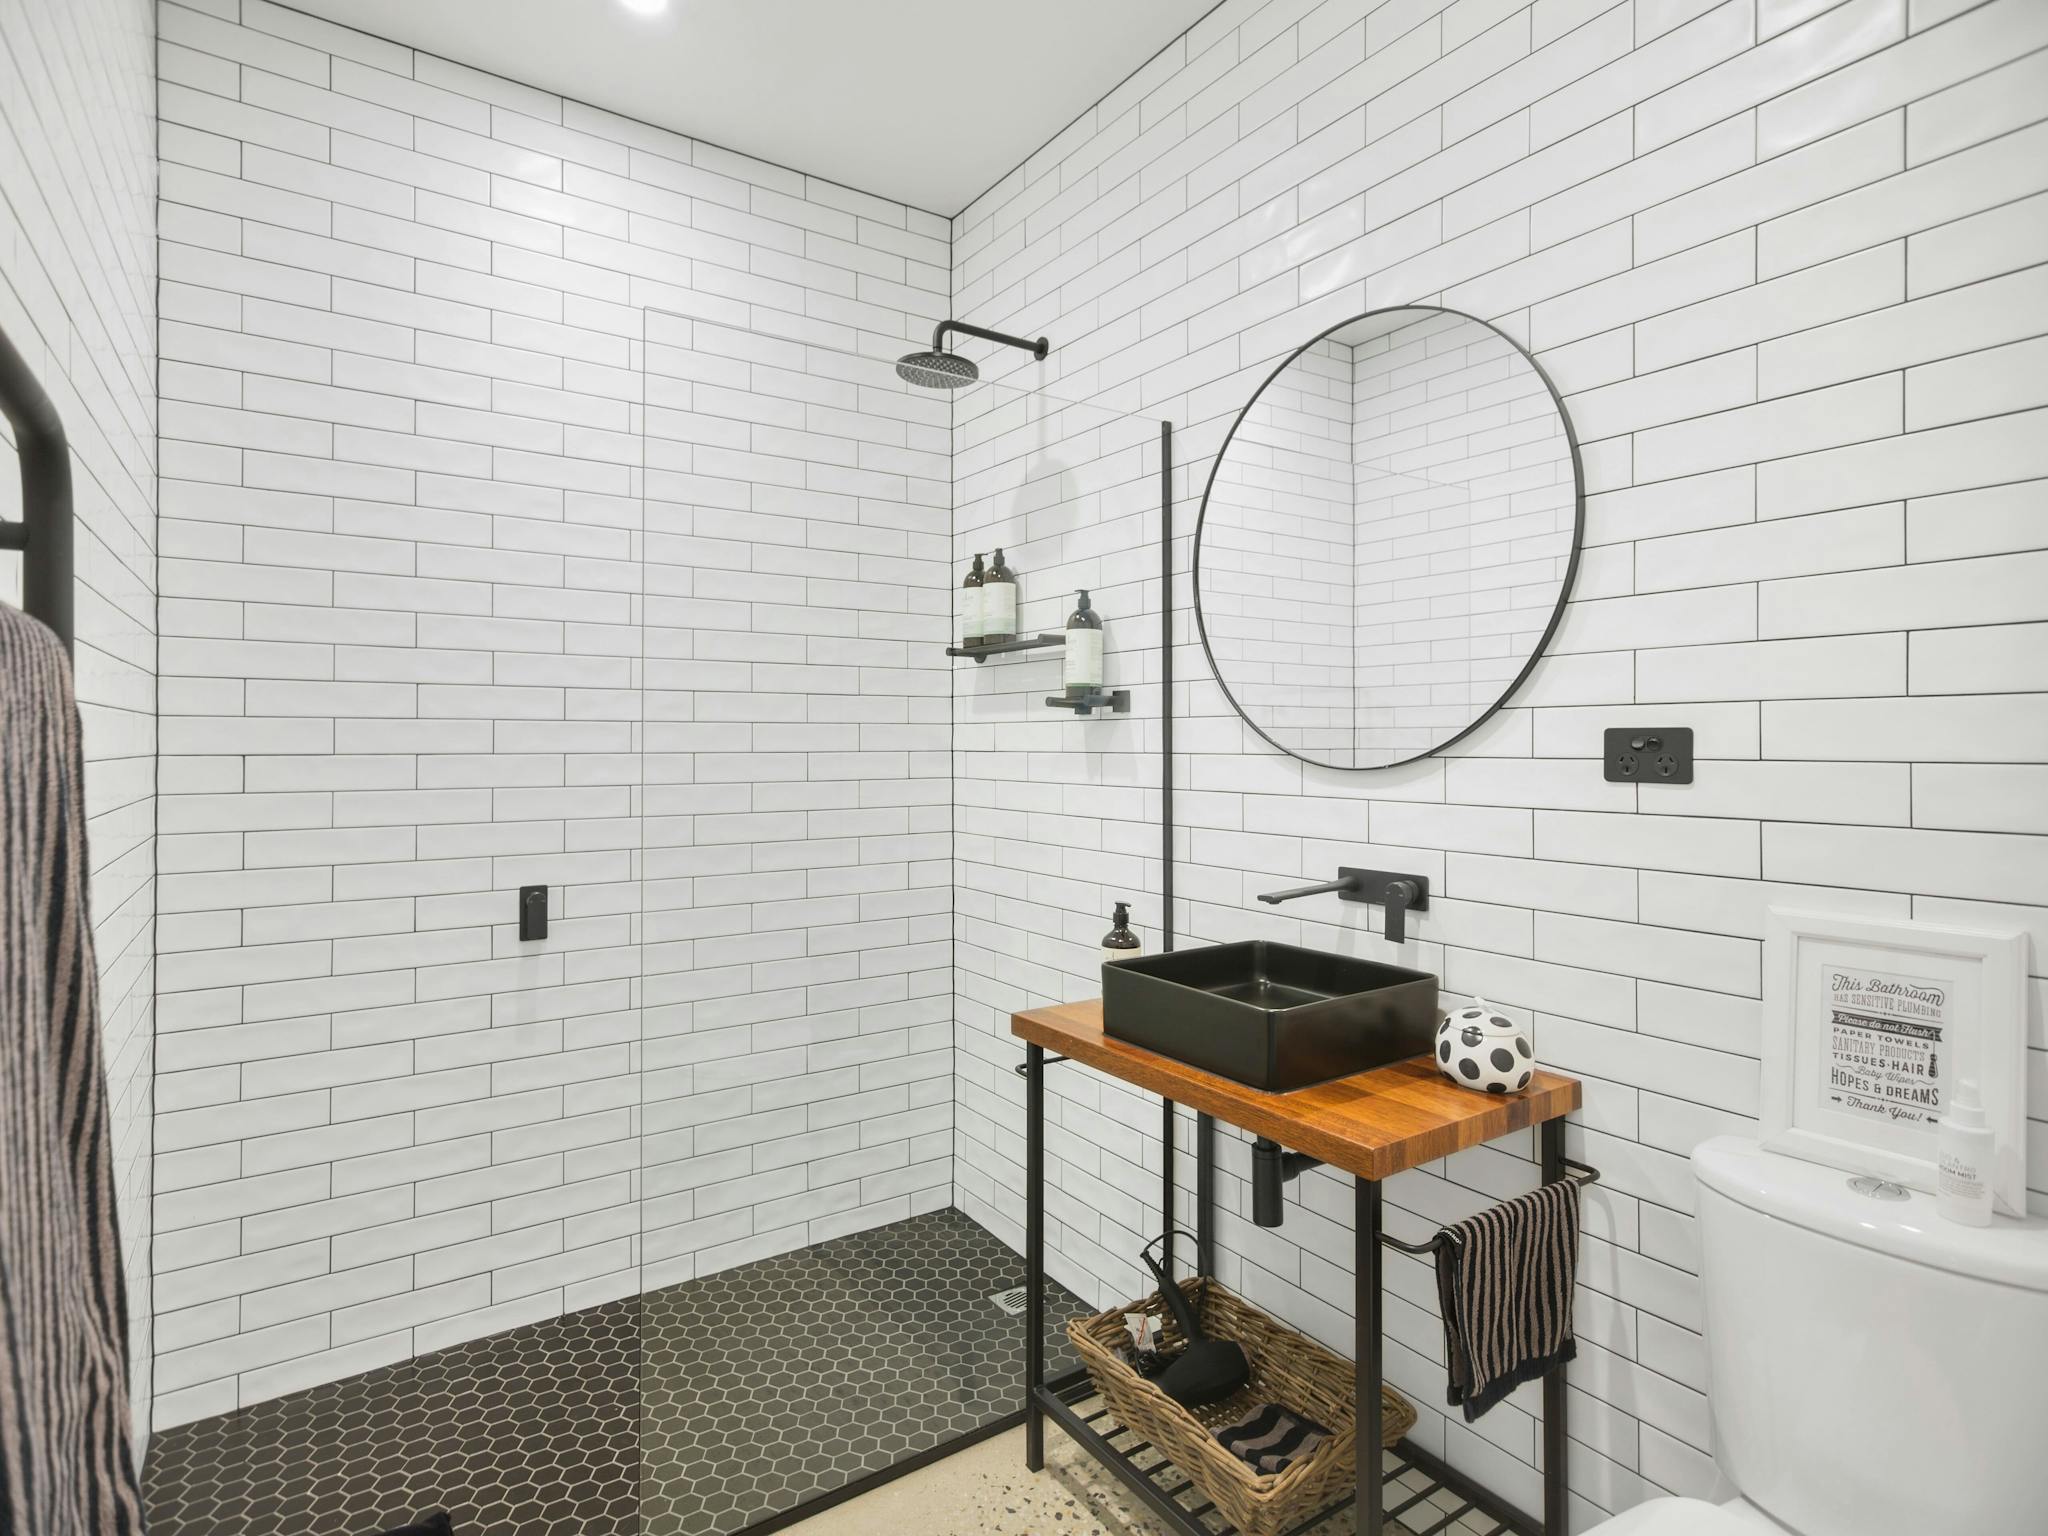 Typical En-suite Bathroom. Subway tiles, black grout, black and white theme, Marimekko towels.